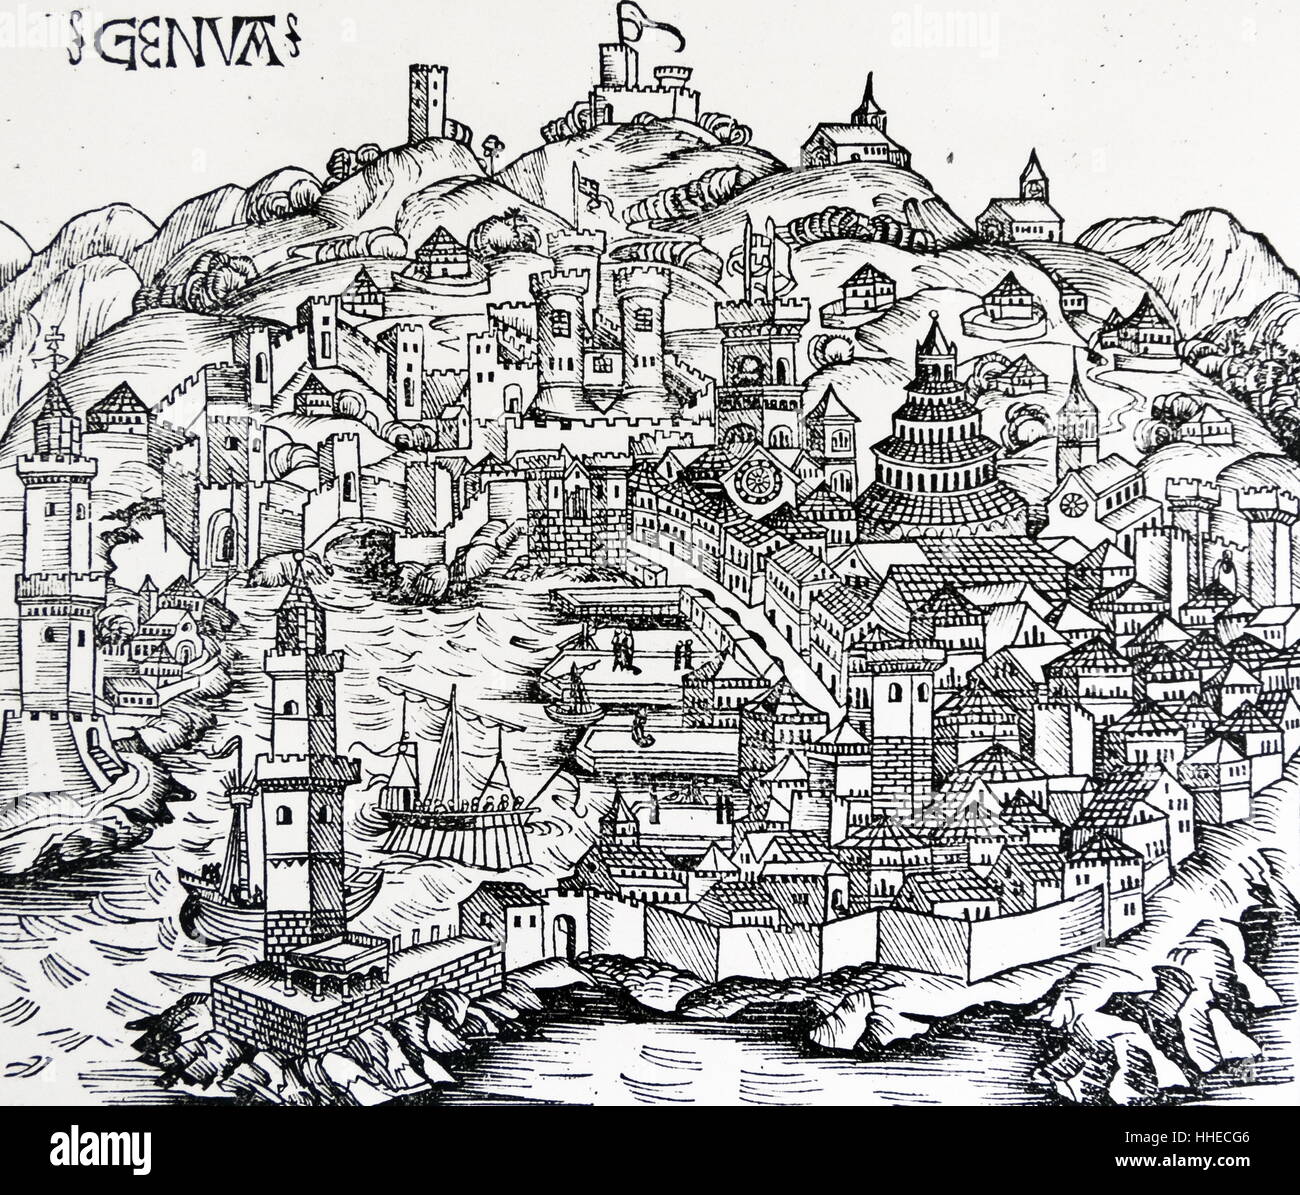 Vue de Gênes en Italie, montrant une cuisine et un voilier dans le port, et les jetées et les entrepôts à quai pour l'entreposage des marchandises, déchargés des bateaux commerciaux. Sehedel Liber Chronicarum de Hartmann mundi (Nuremberg Chronicle), 1493 Banque D'Images